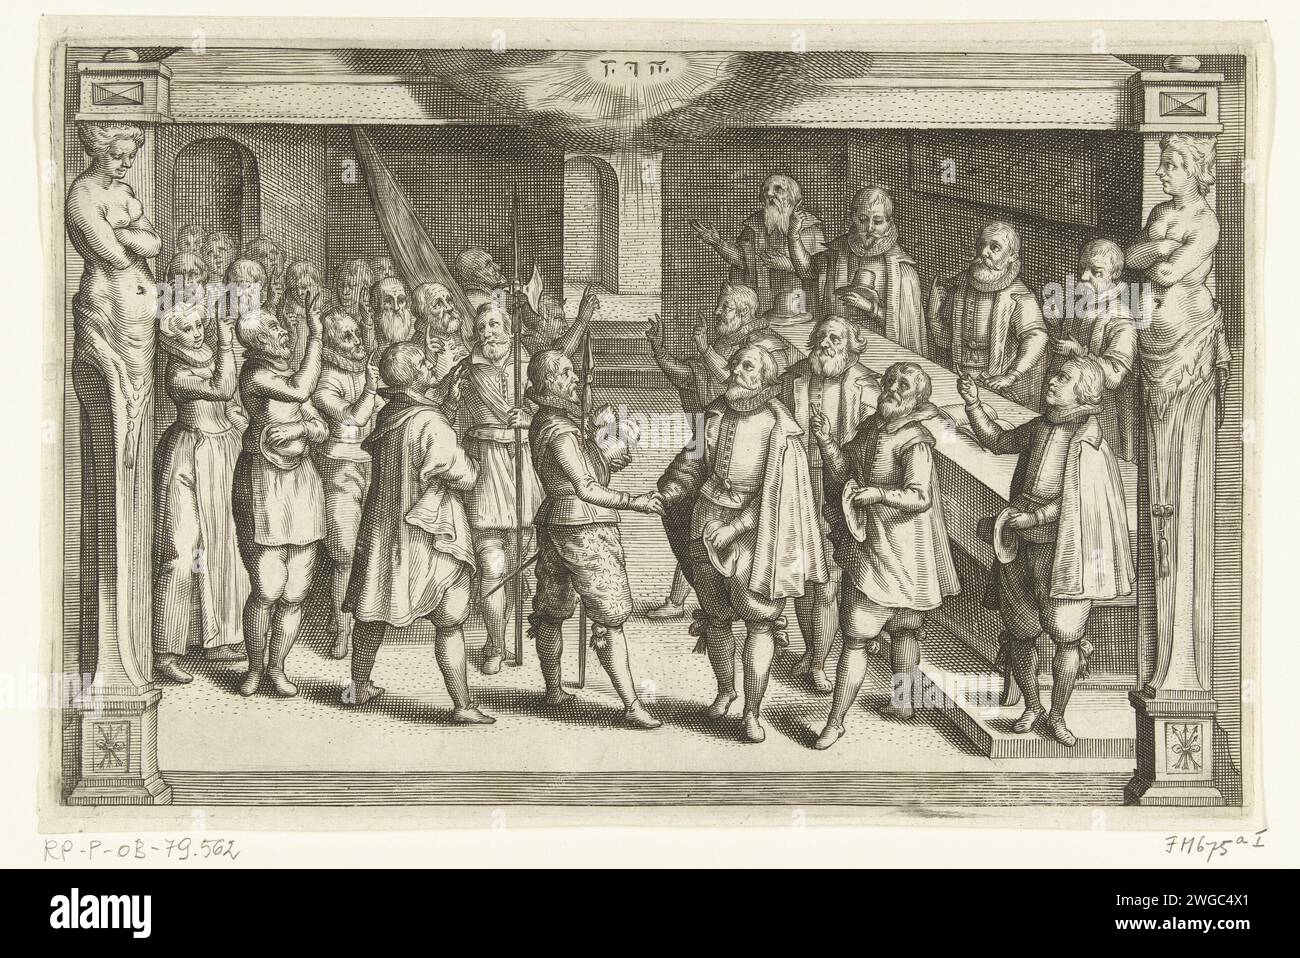 Den Eid der Treue ablegen, 1574, 1612 - 1614 Ablegen des Eid der Treue während der Belagerung von Leiden, 1574. Innenraum mit einer Gruppe leidener Männer und Frauen, die treu auf den Prinzen von Orange schwören. Oben eine Wolke mit dem Tetragramm. In einem Gestell mit Hermen auf beiden Seiten. Nordholländische Papierstich, der einen Eid schwört (mit zwei gezogenen Fingern) Stockfoto